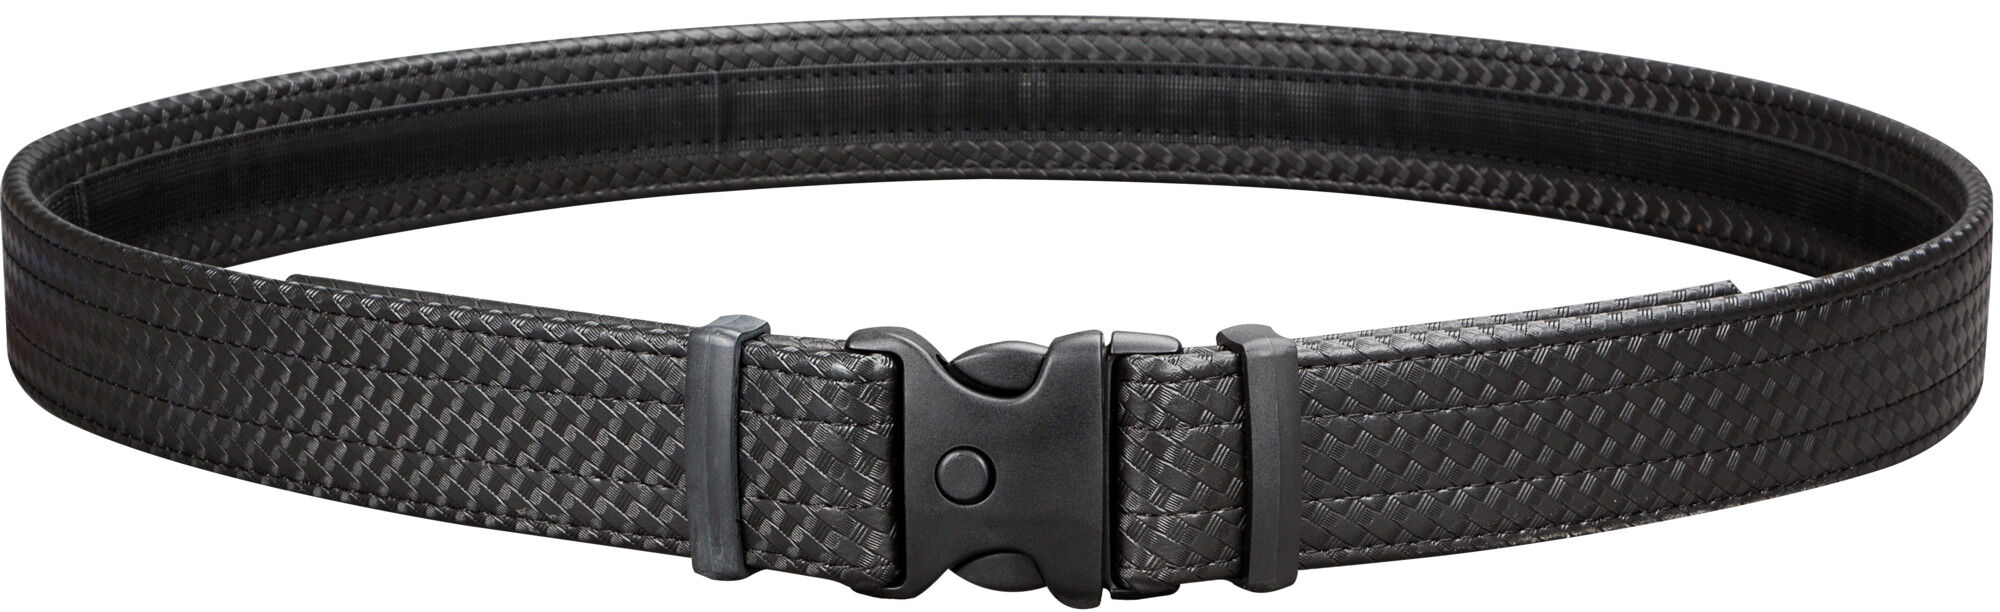 8909-2 Large, Black Uncle Mike's Duty Gear Kodra Nylon EVO Duty Belt 